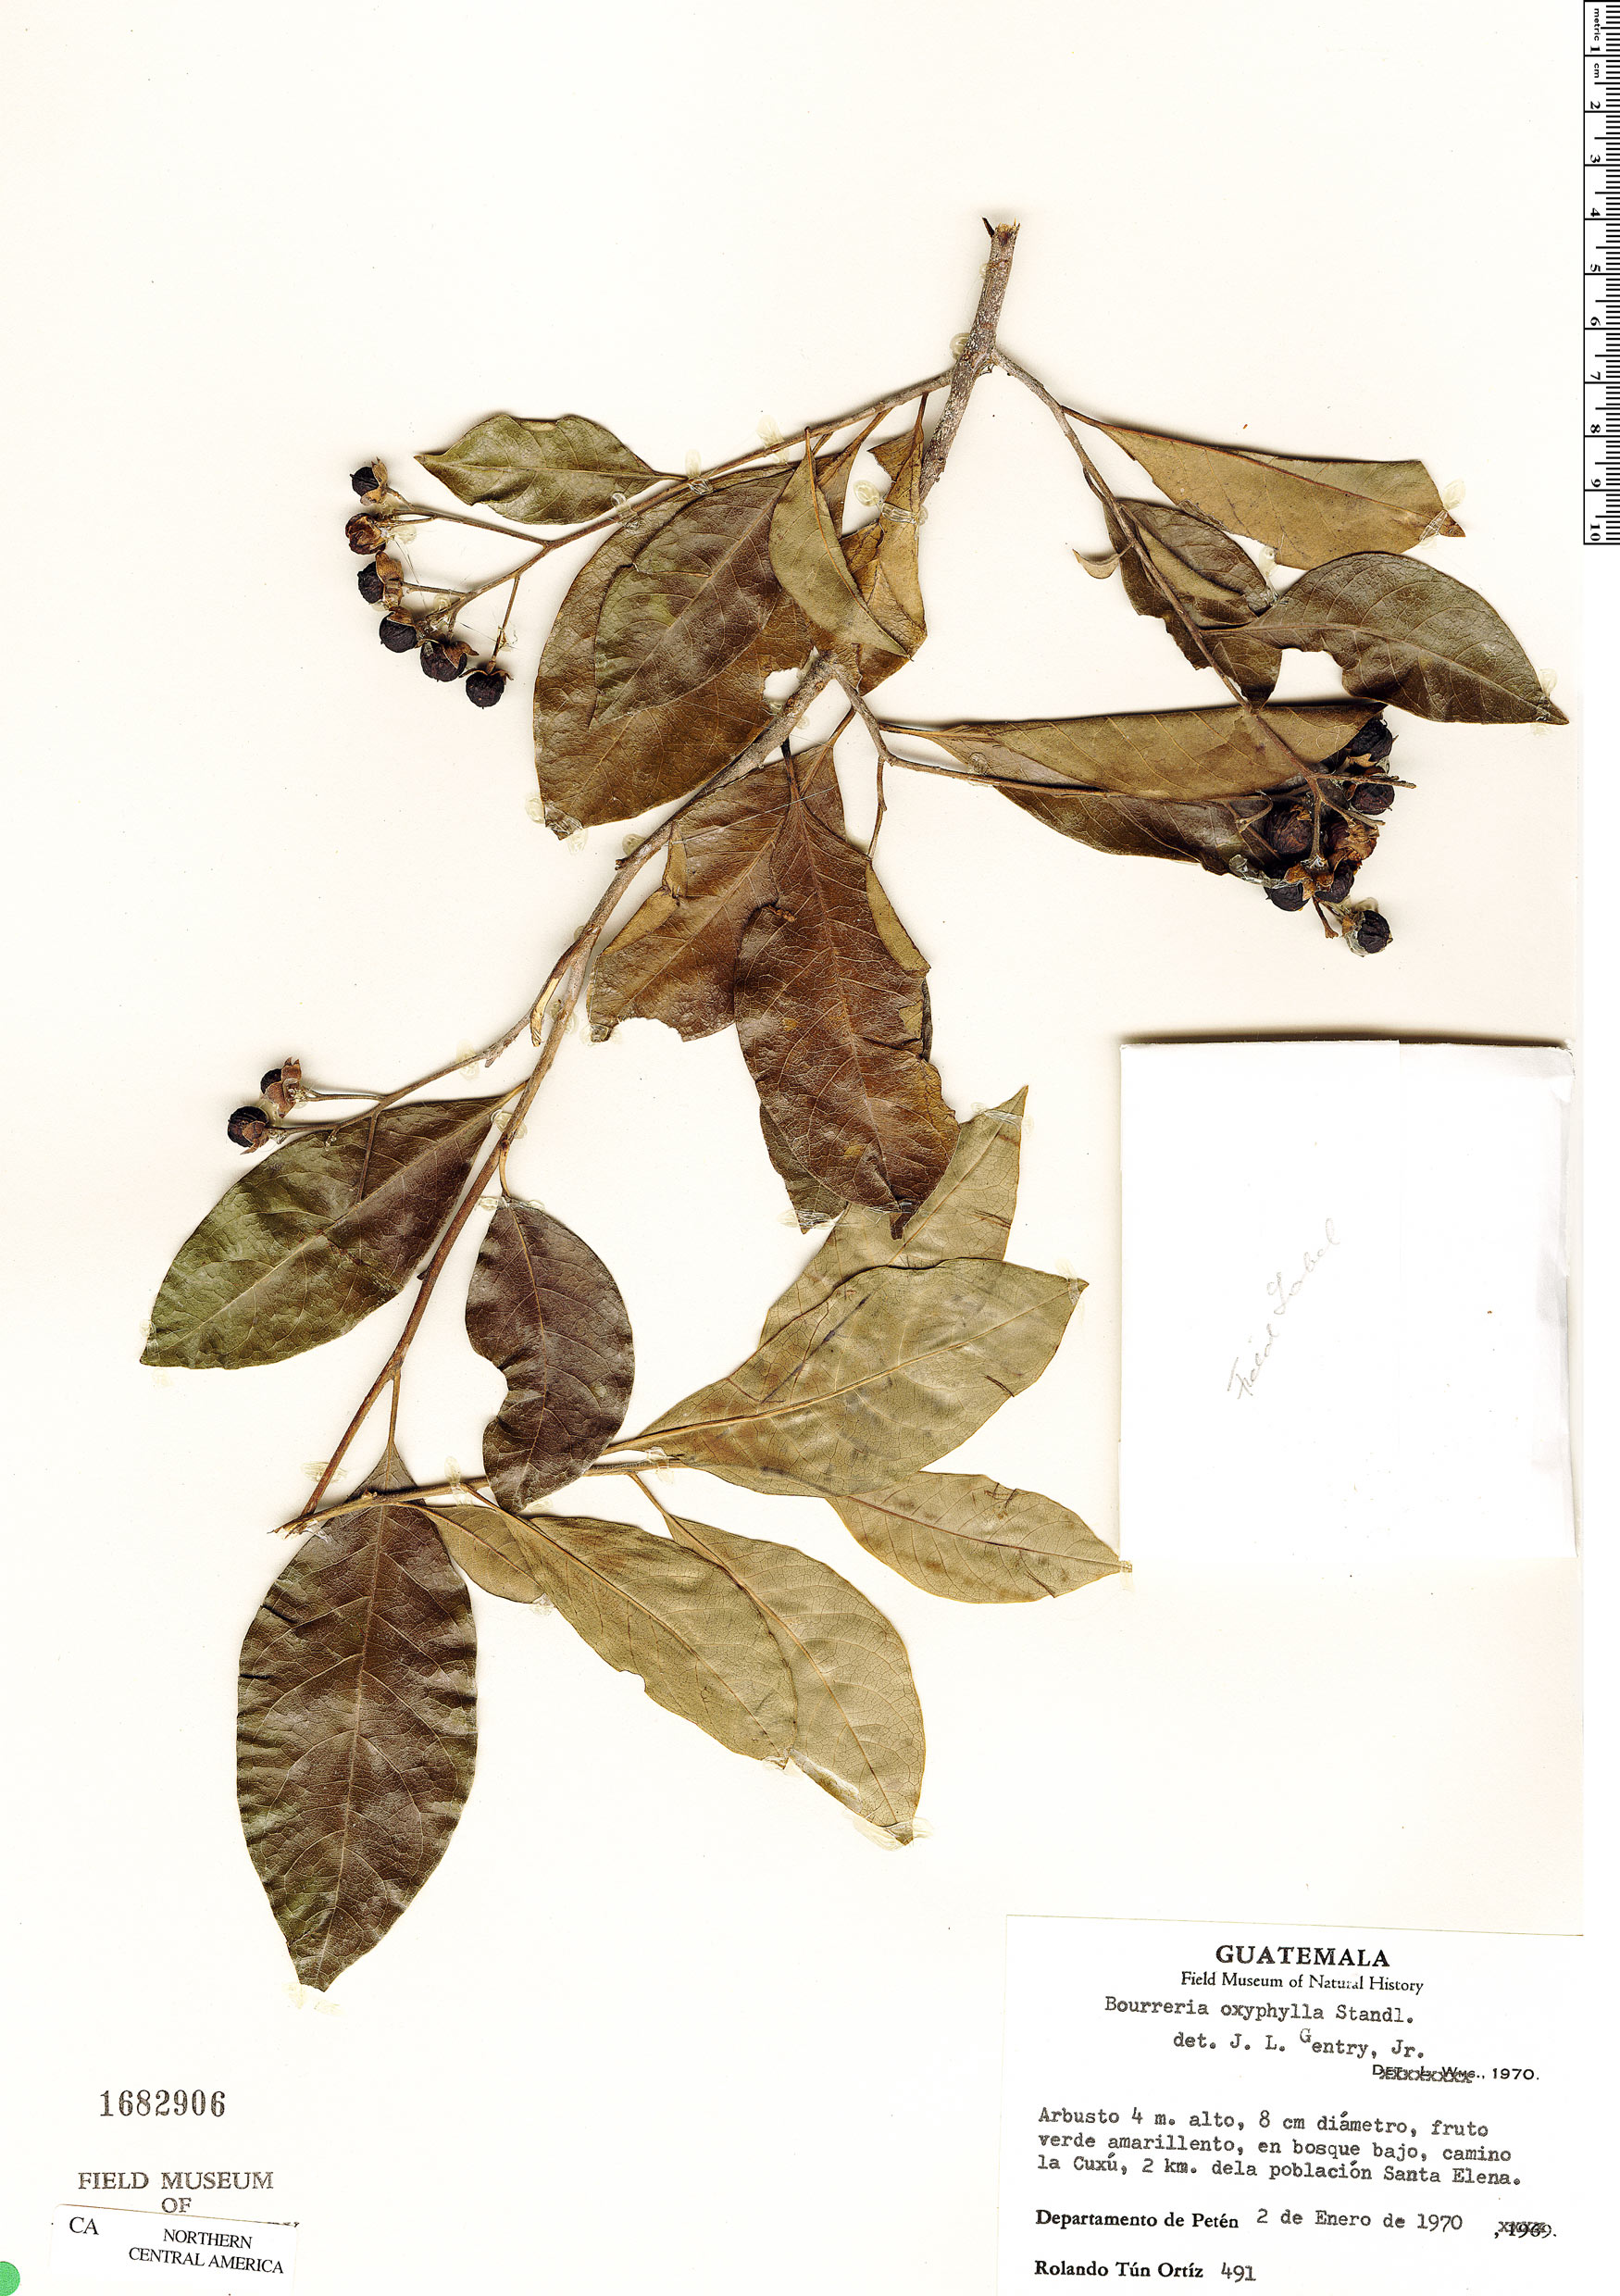 Bourreria oxyphylla image